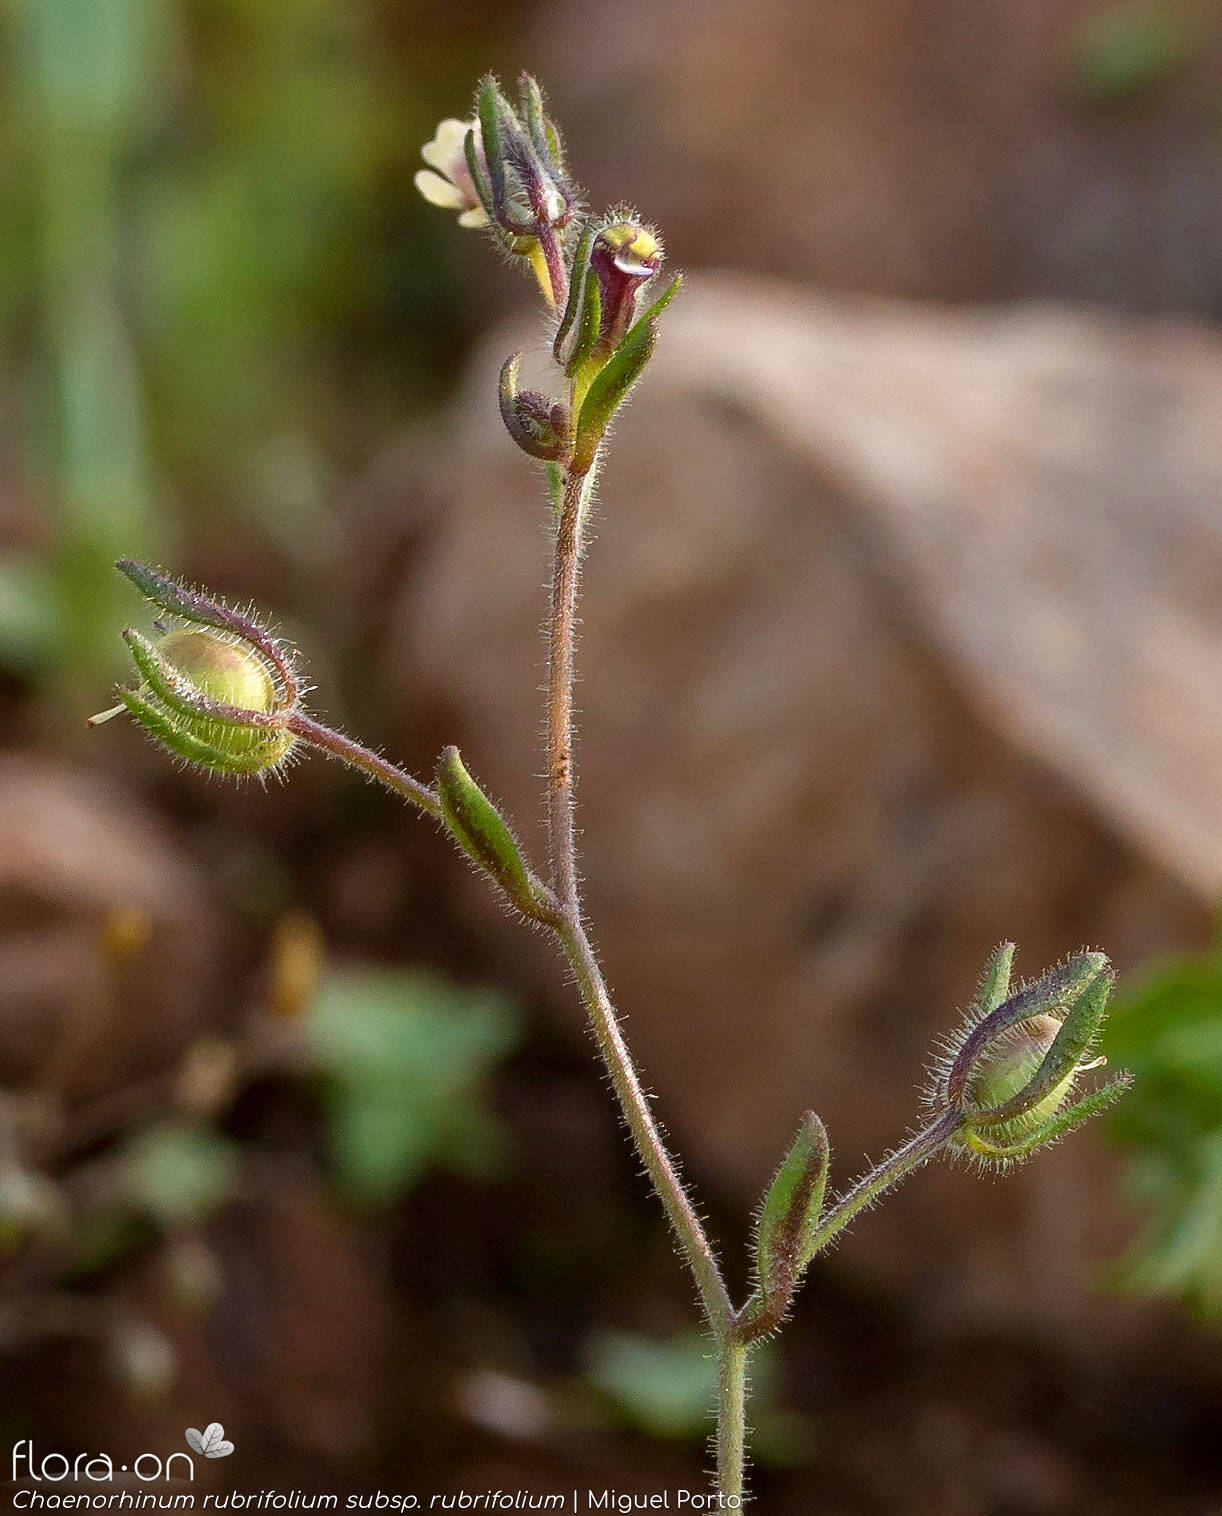 Chaenorhinum rubrifolium rubrifolium - Flor (geral) | Miguel Porto; CC BY-NC 4.0